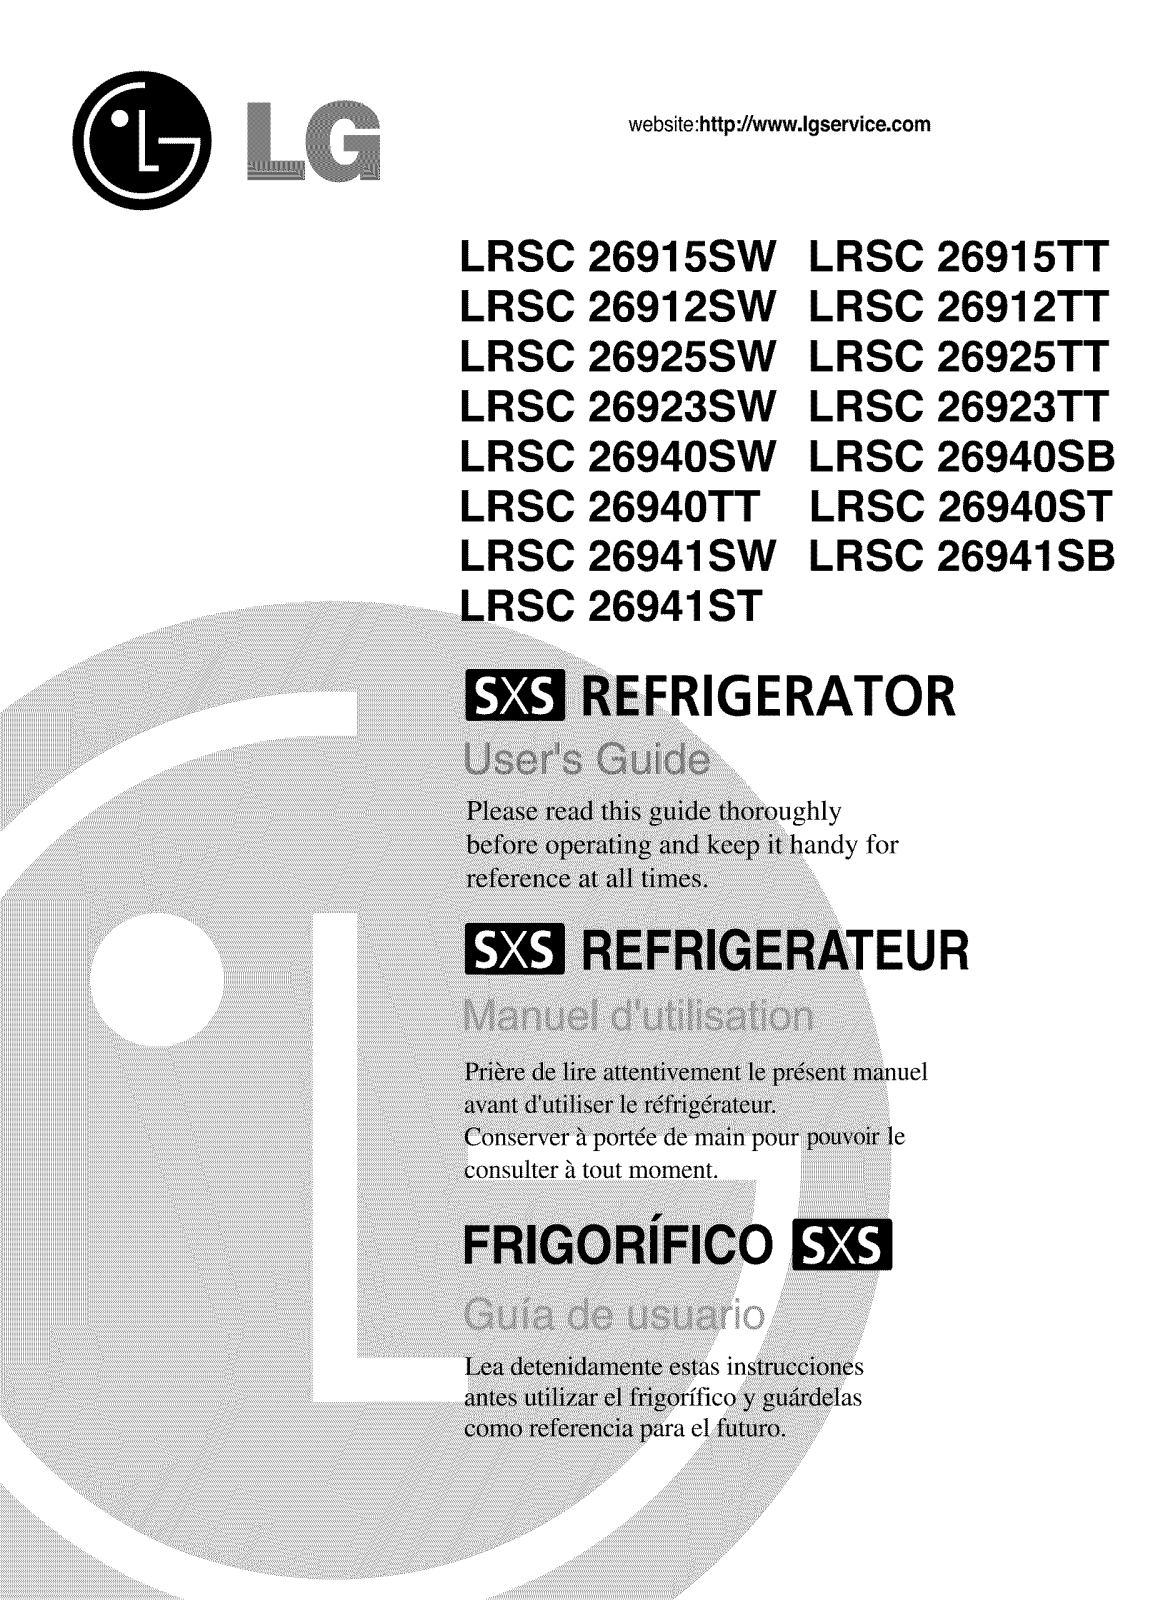 LG LRSC26940SW, LRSC26912SW, LRSC26912TT, LRSC26915SW, LRSC26915TT Owner’s Manual